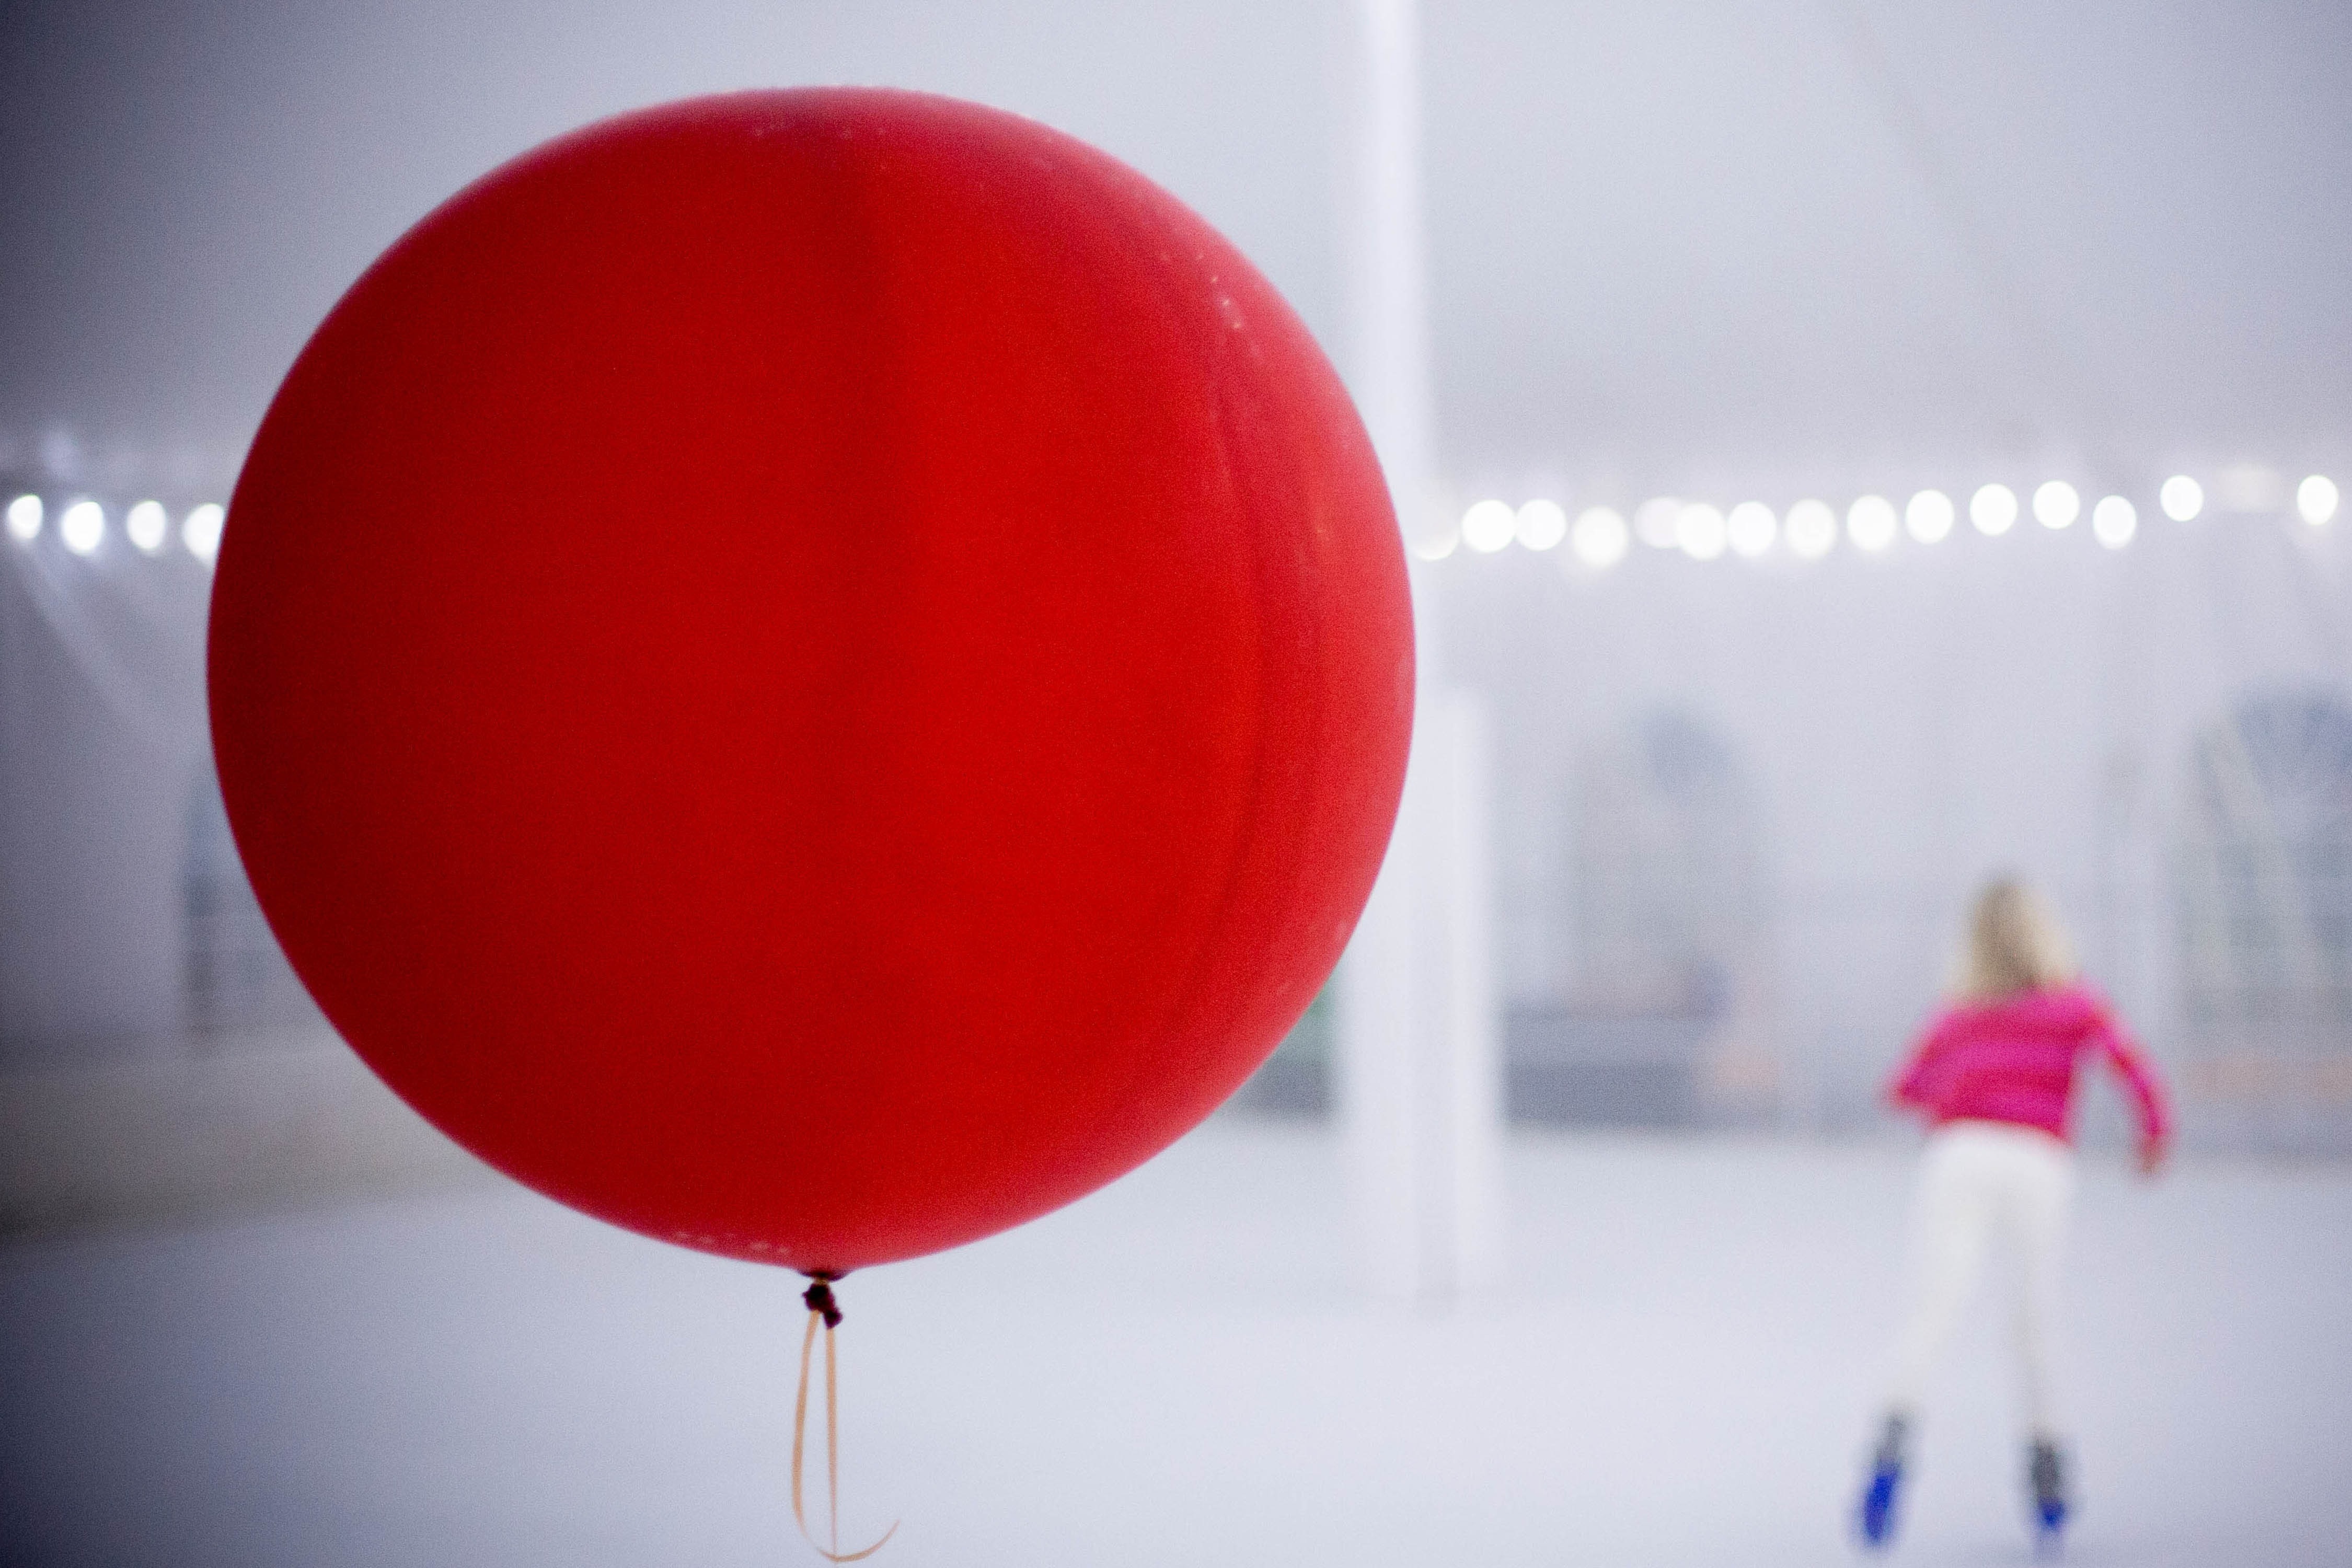 Видео красных шаров